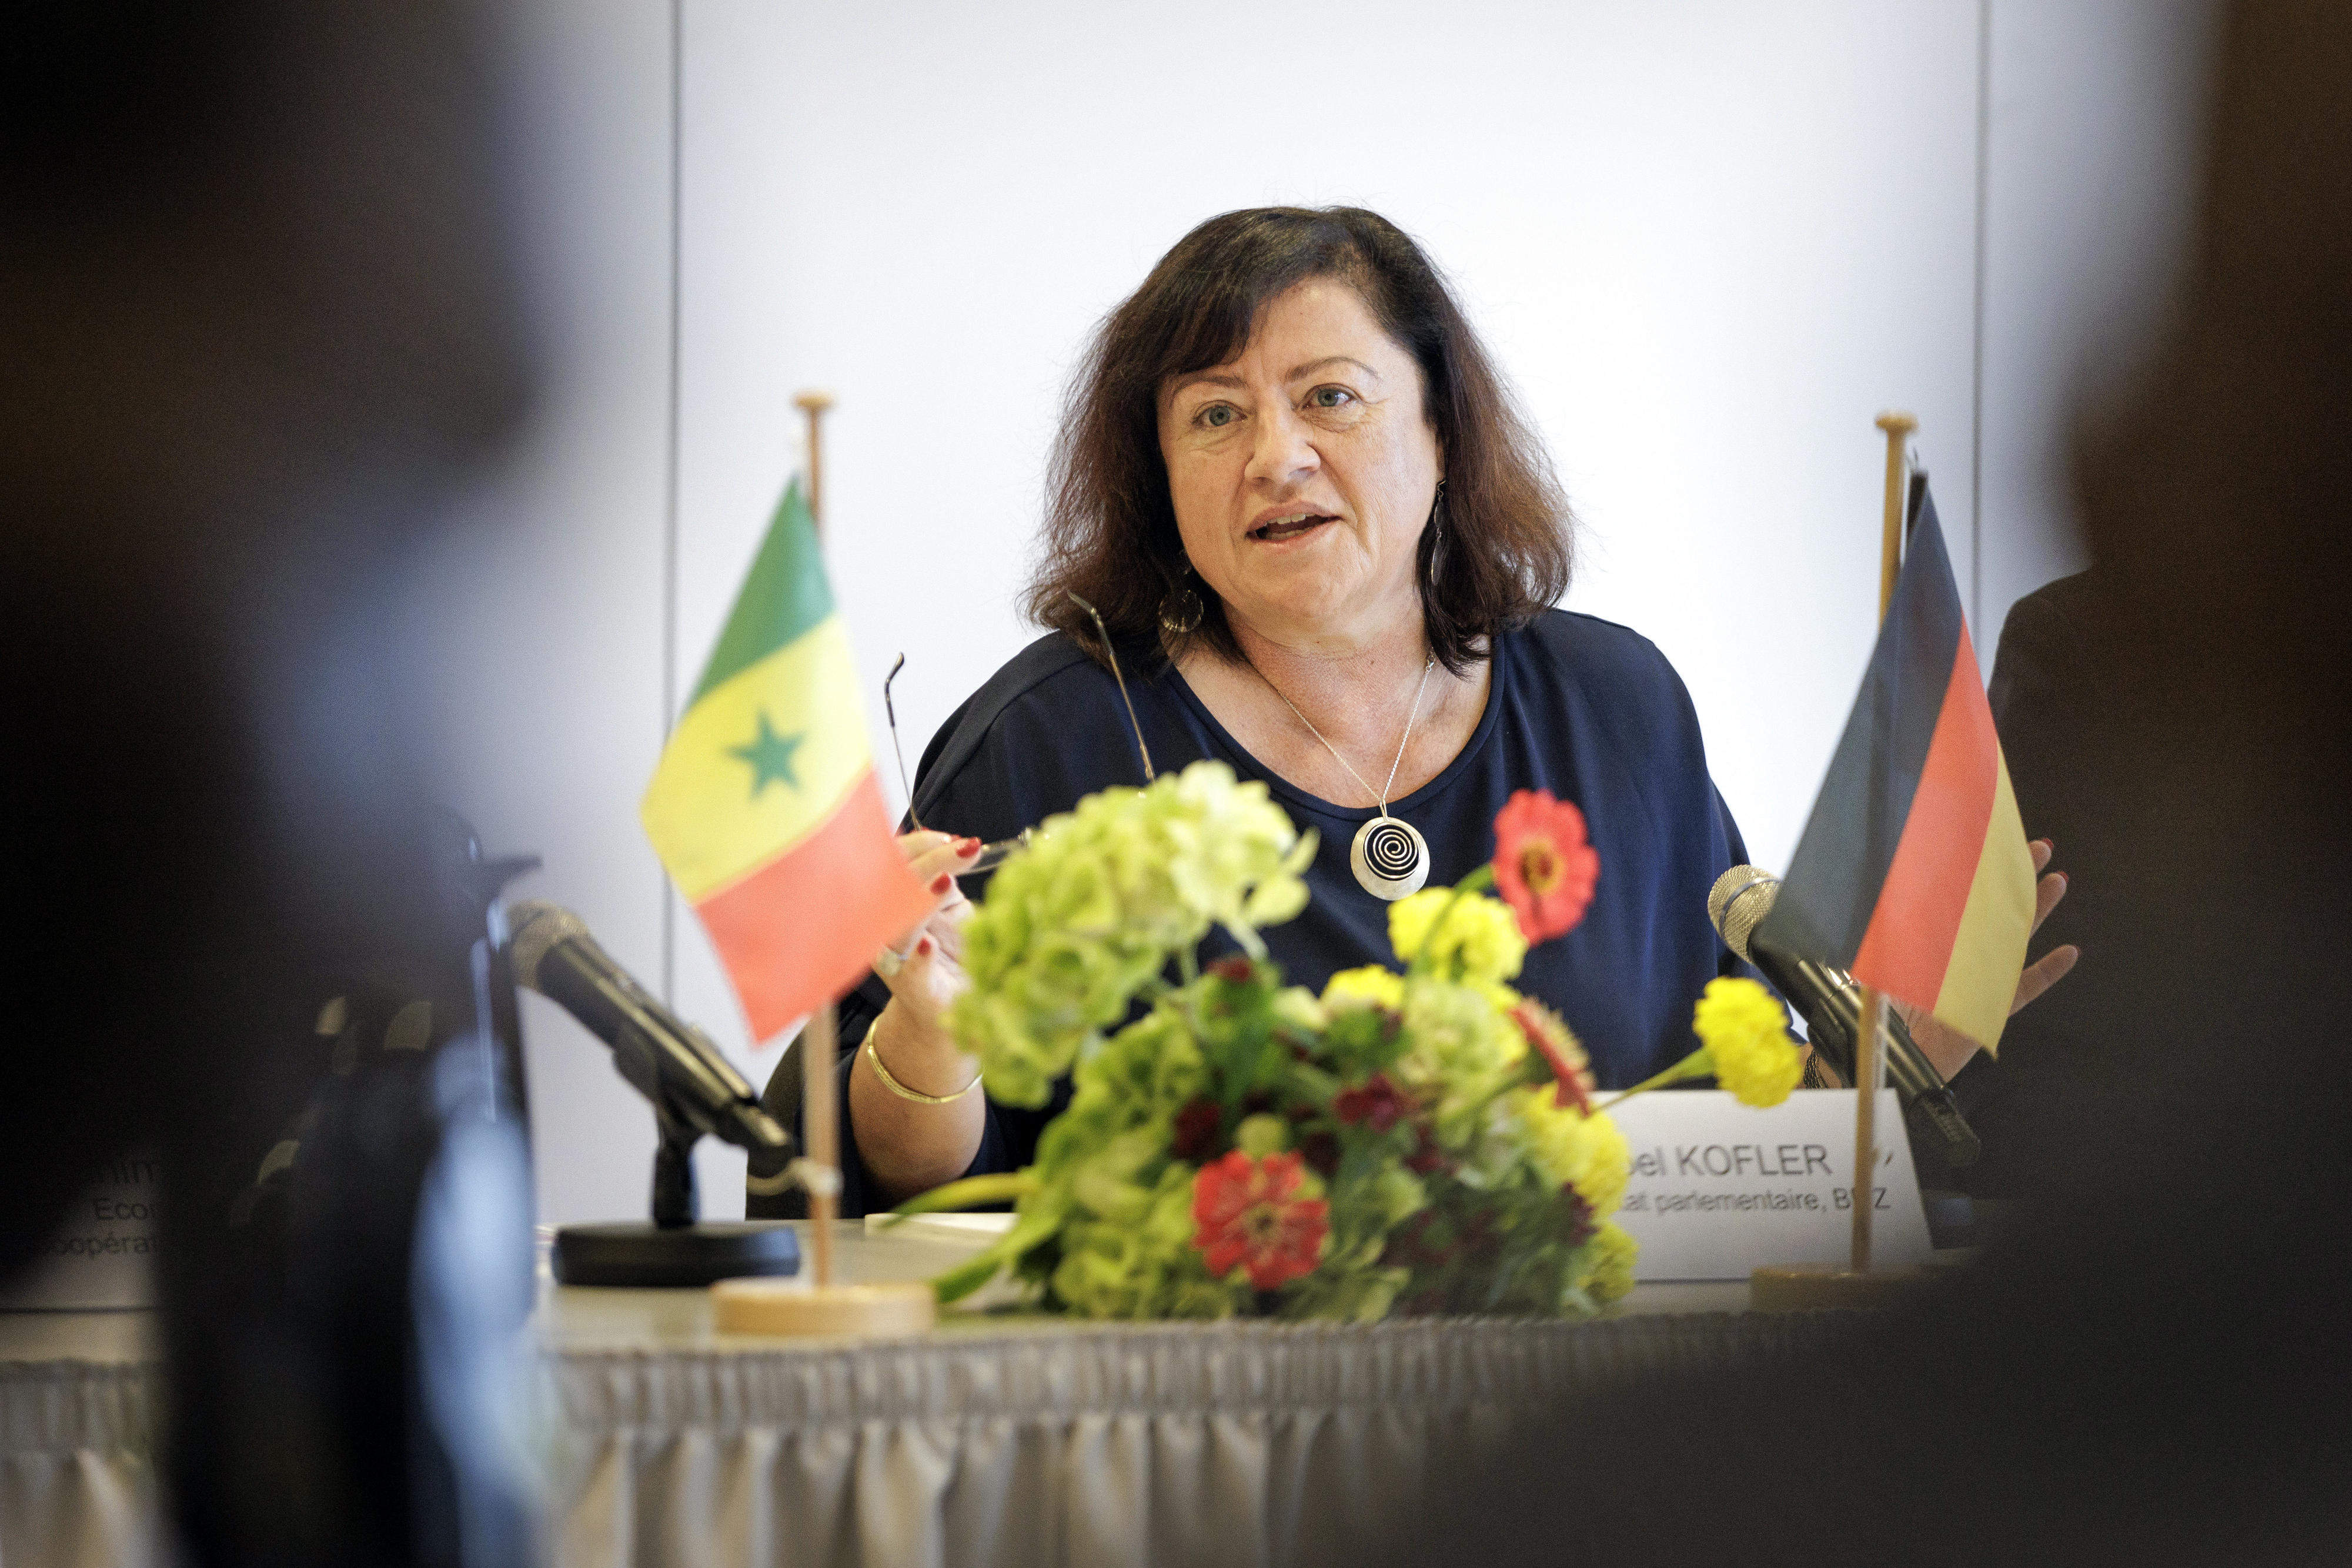  Dr. Bärbel Kofler, Parlamentarische Staatssekretärin im BMZ, während der deutsch-senegalesischen Regierungsverhandlungen im Oktober 2023 in Berlin